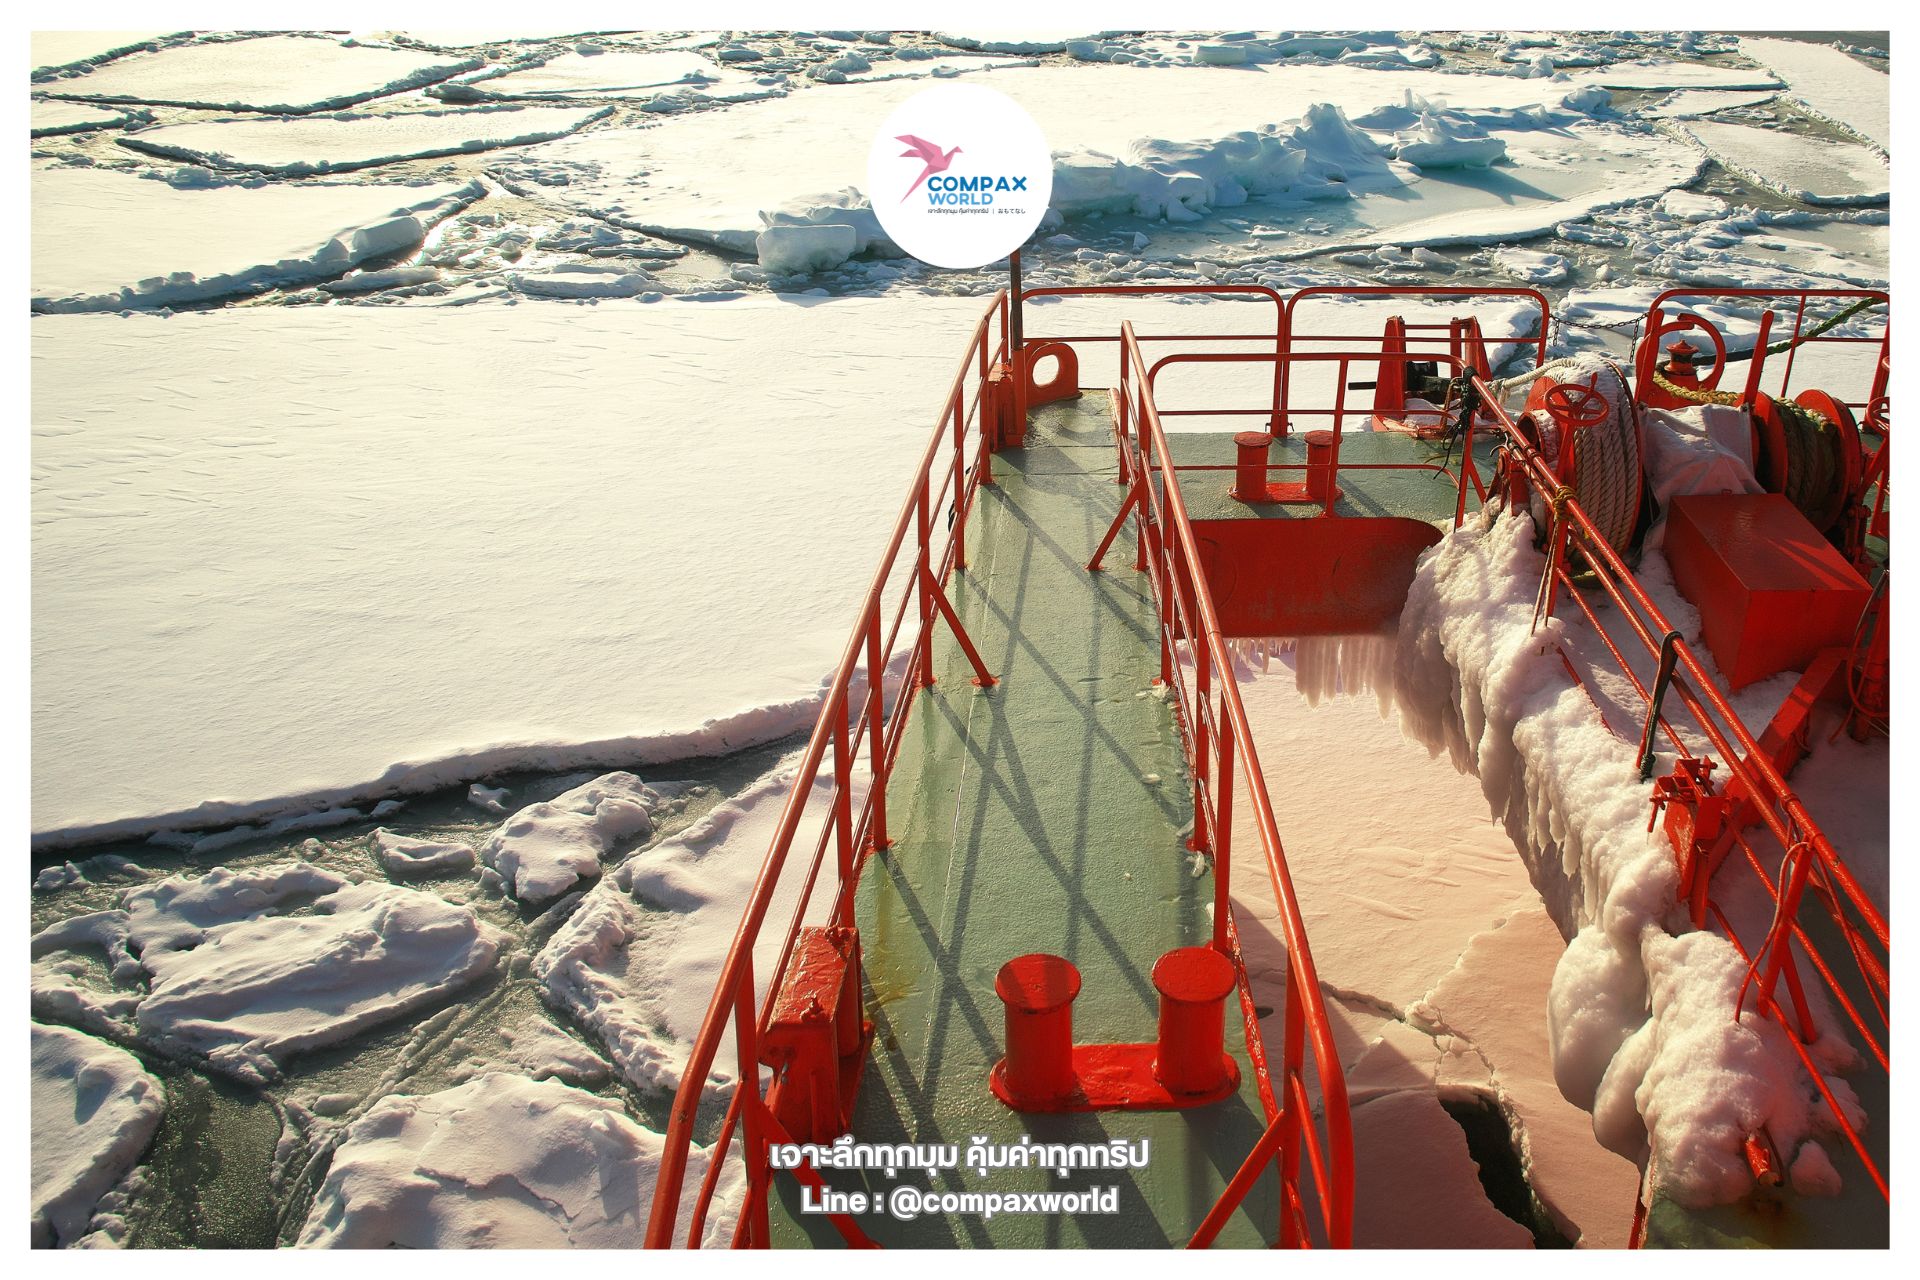 เที่ยวฮอกไกโด ฤดูหนาว ล่องเรือตัดน้ำแข็ง ICE BREAKING GARINKO